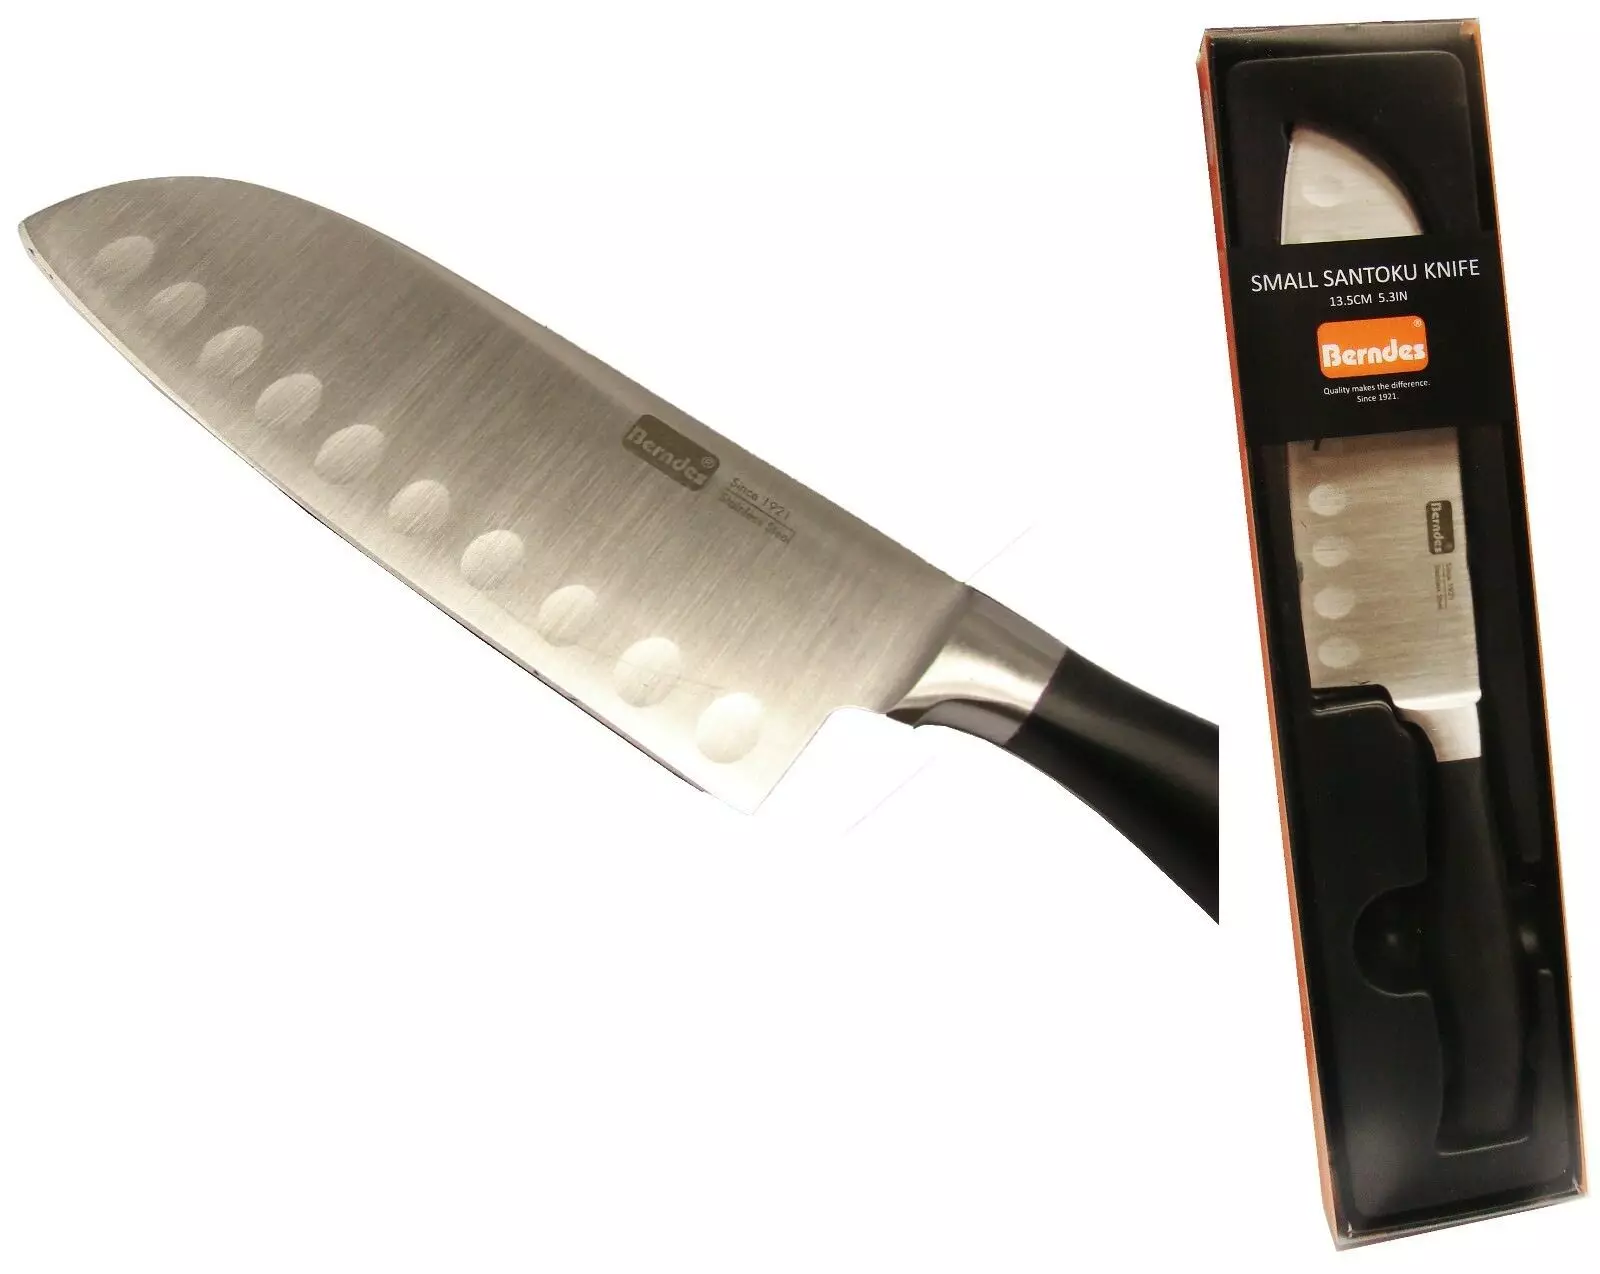 Книвес Берндес: Преглед ножа сантока и други модели. Карактеристике кувара, универзалних и других берндес ножева 25004_4